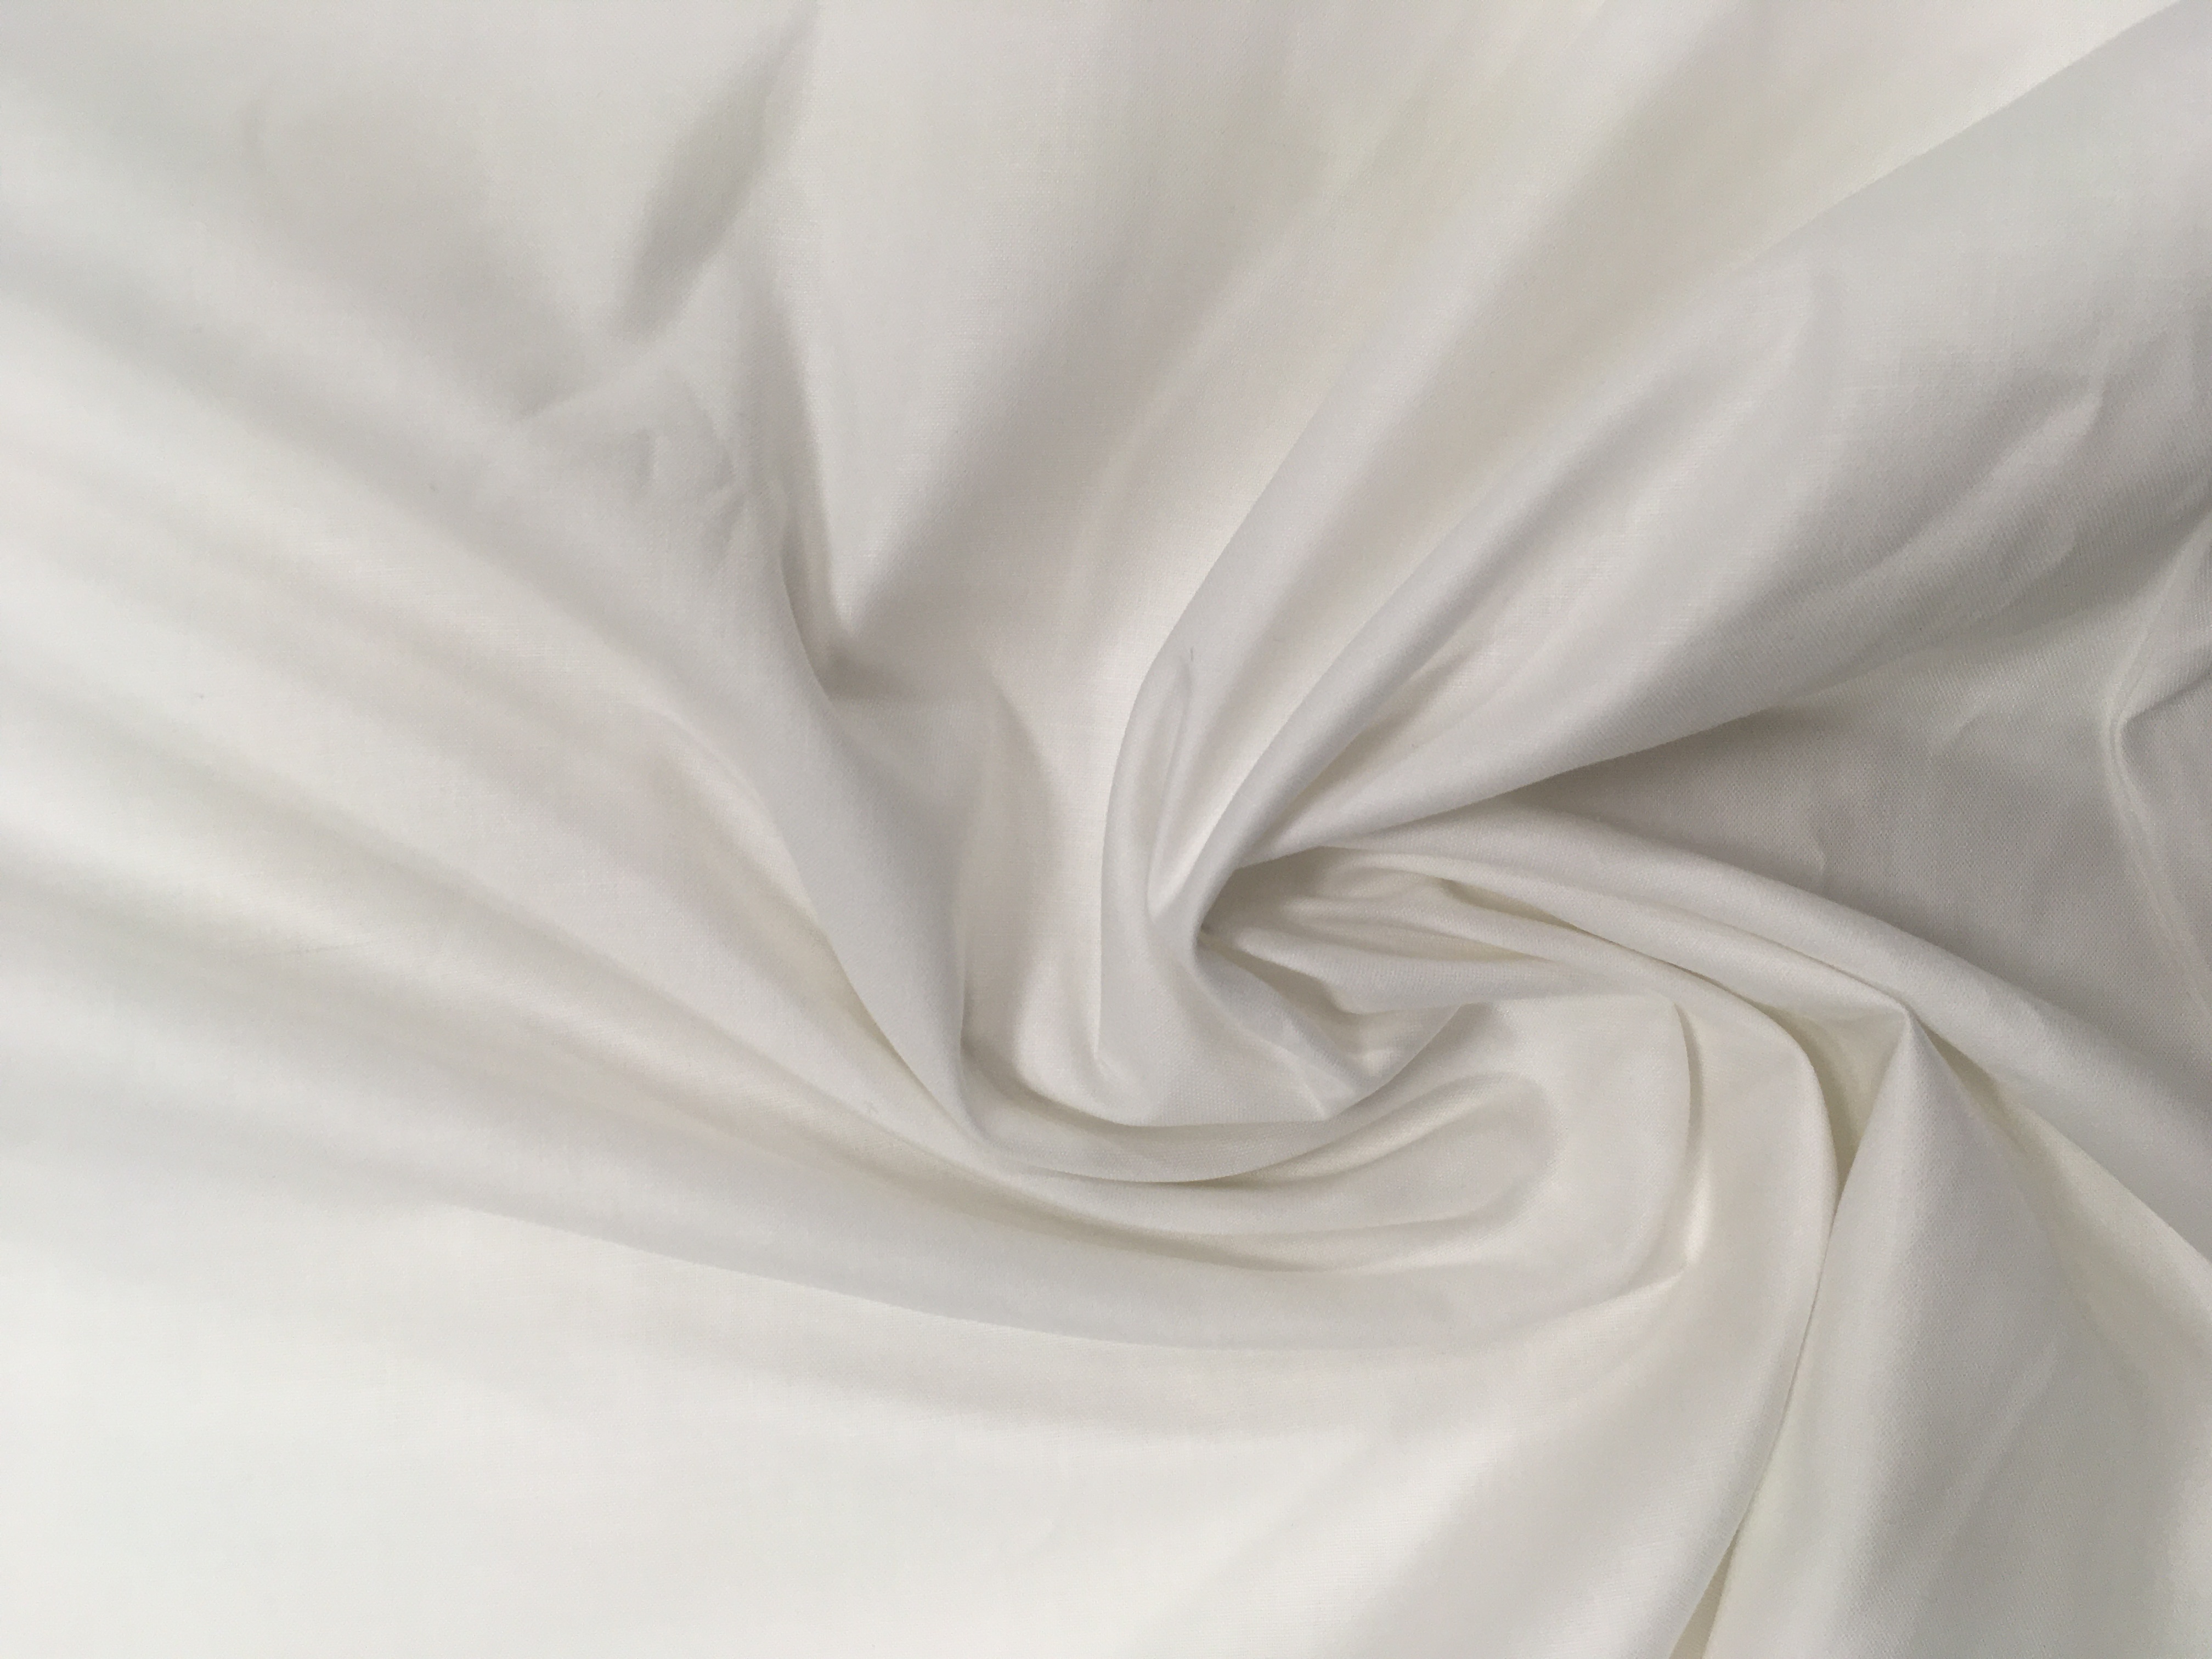 Tessuto cotone bianco – Da Giselda – Biancheria per la casa